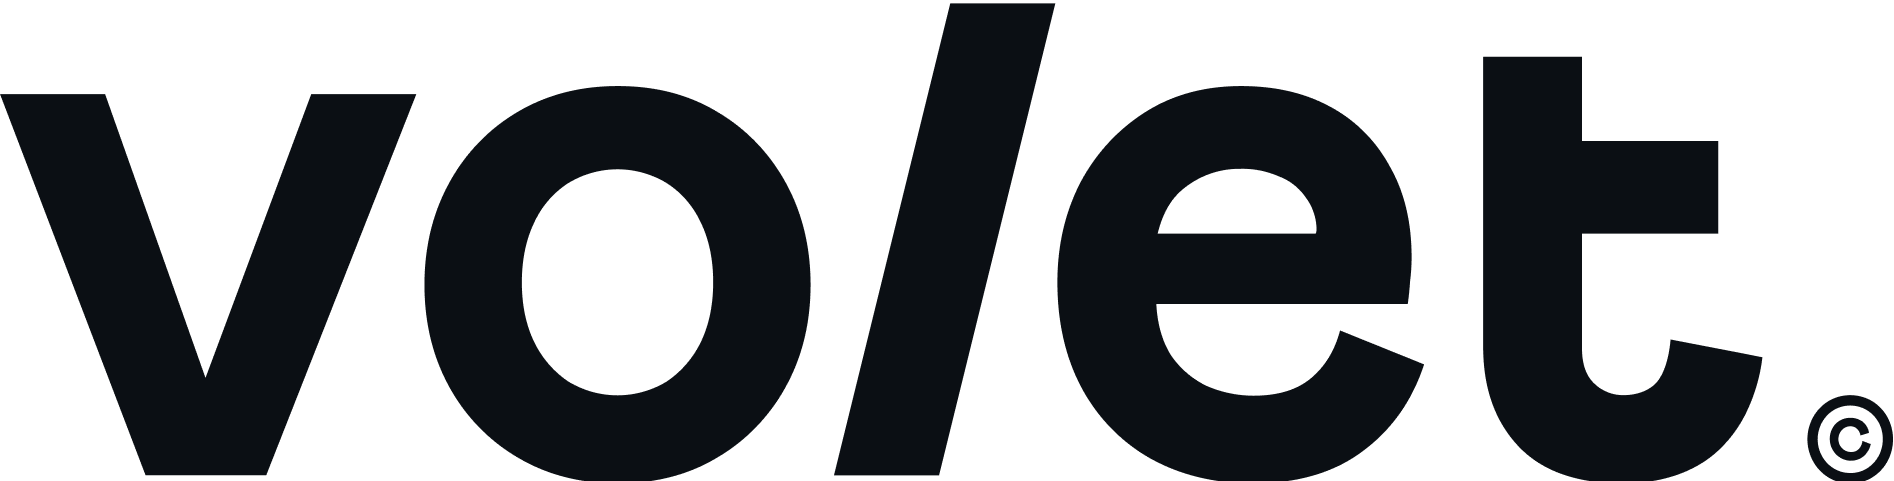 volet.com logo for e-wallet